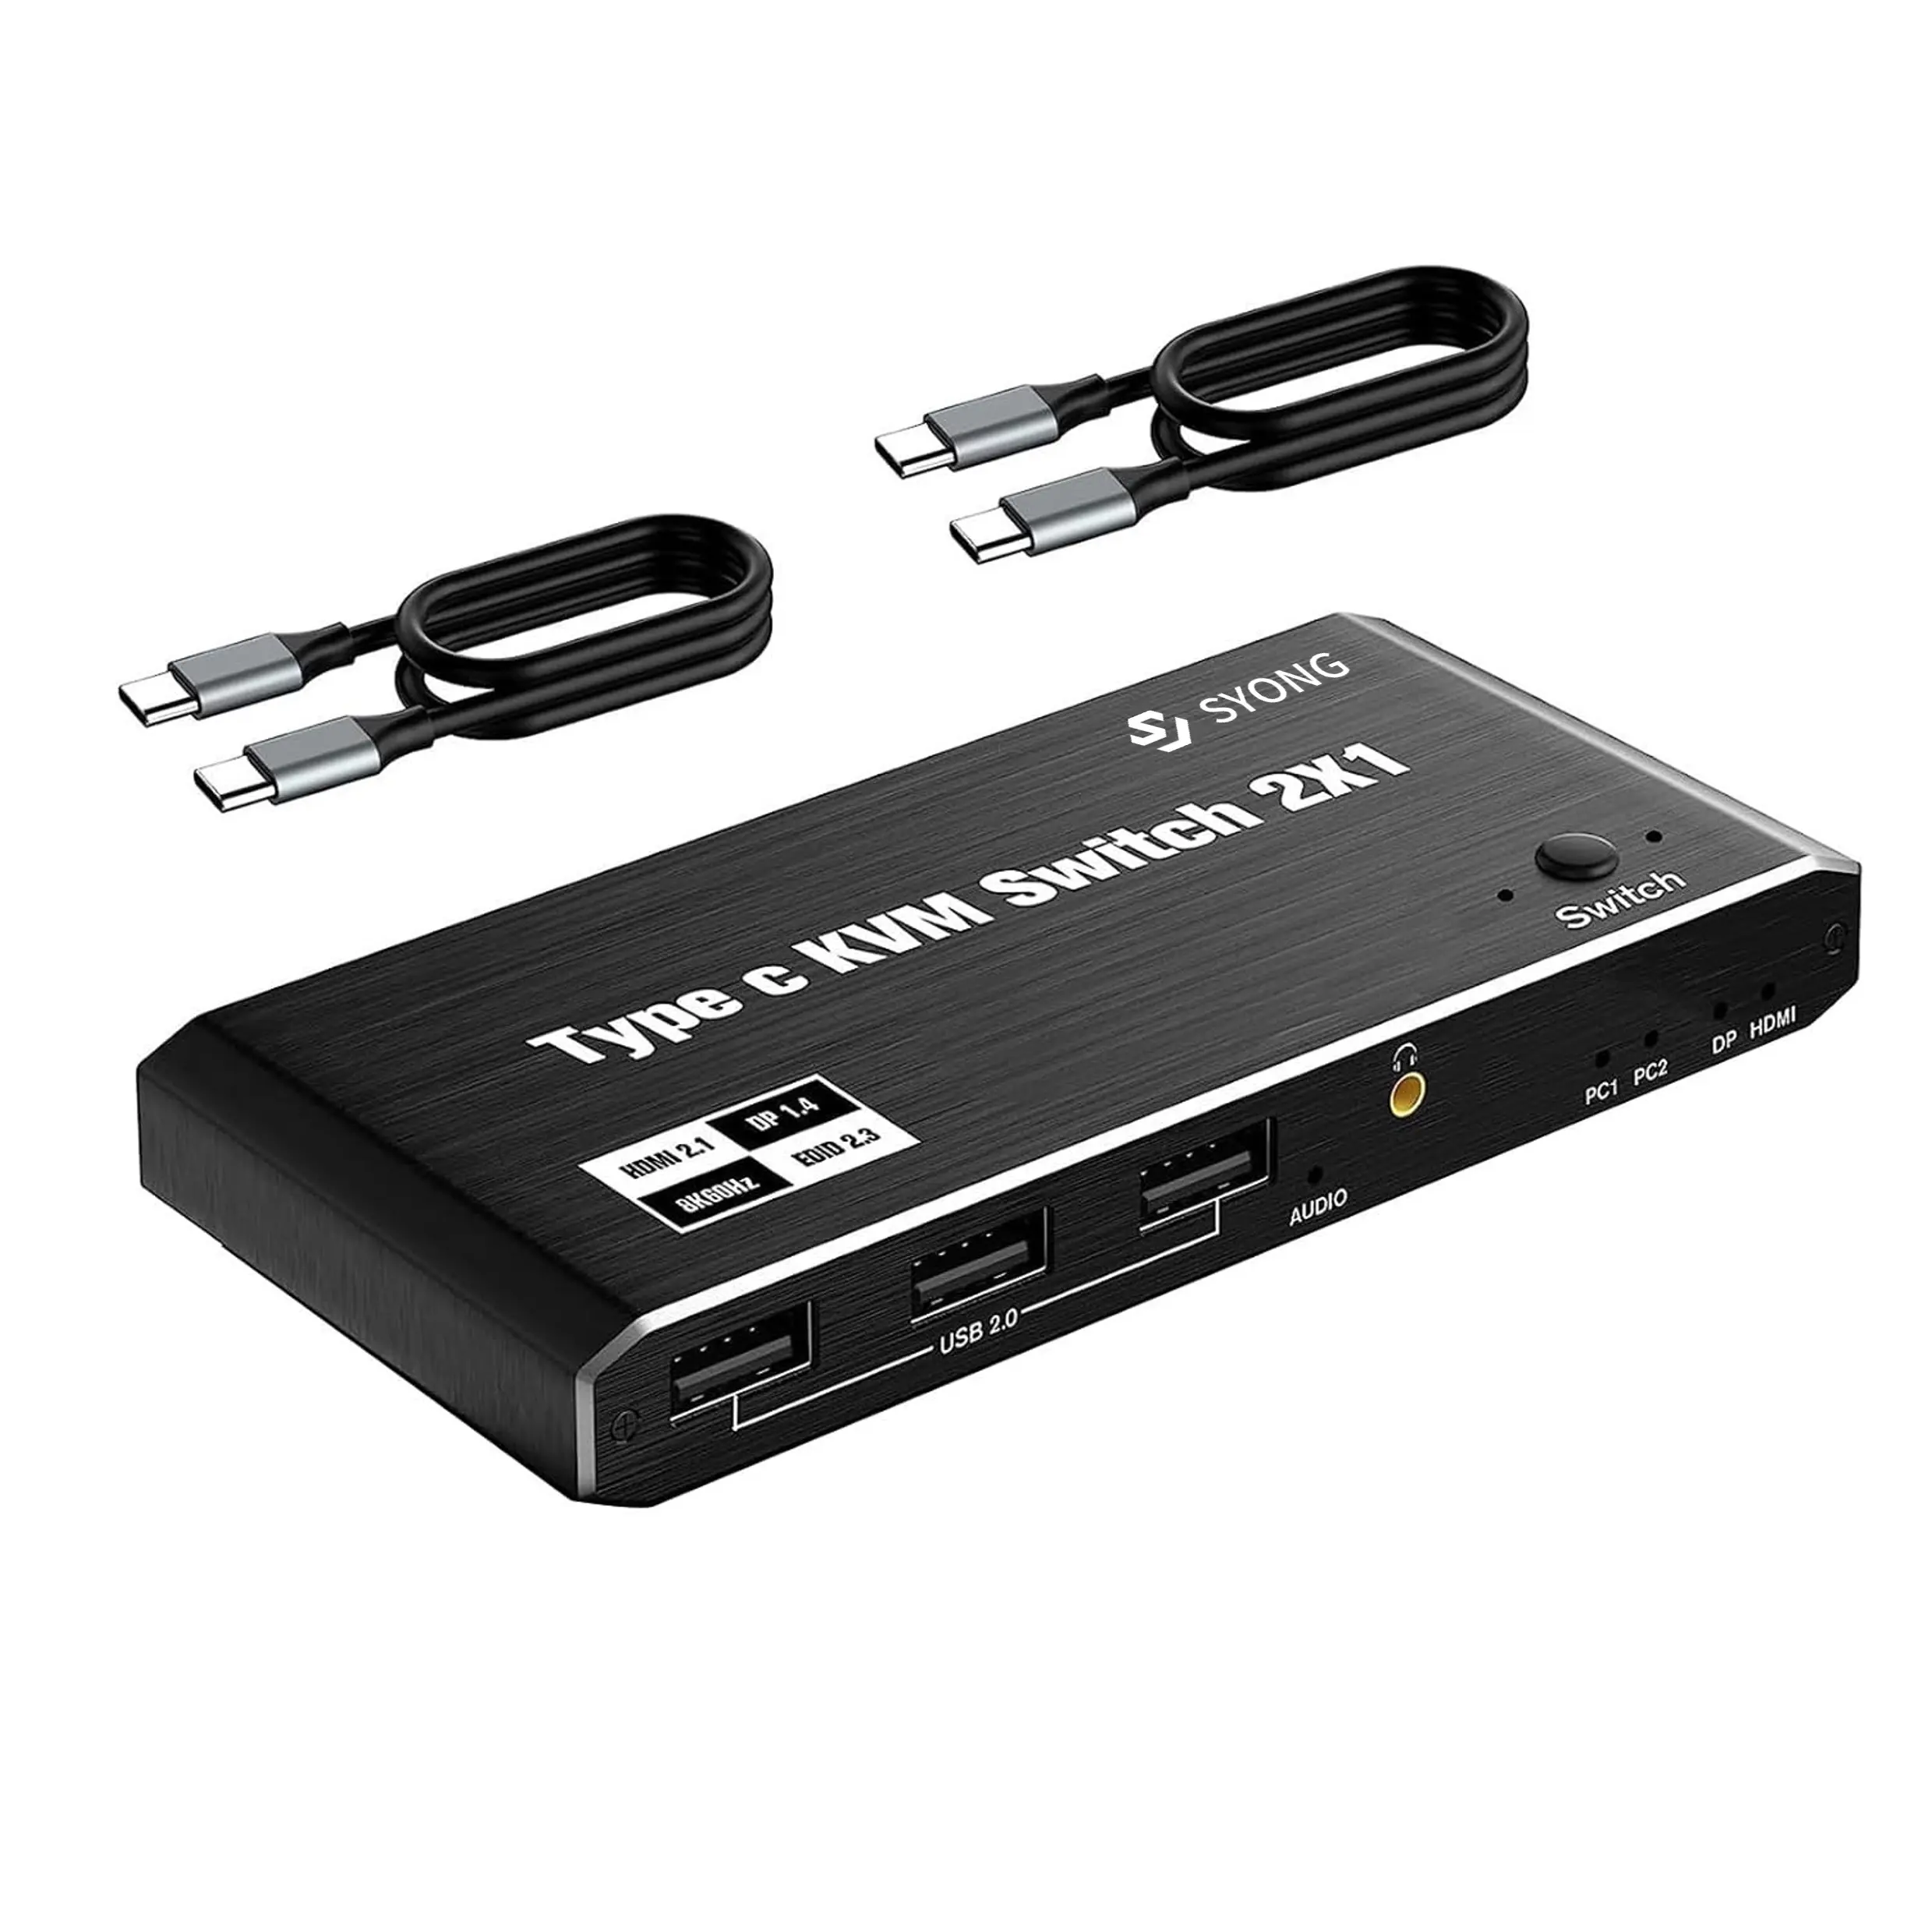 SY 8K HDMI 2.1 2x1 KVM 스위치 지원 4K60HZ USB 2.0 포트 마우스 휠 선택기 키보드 마우스 원활한 HDMI KVM 스위처